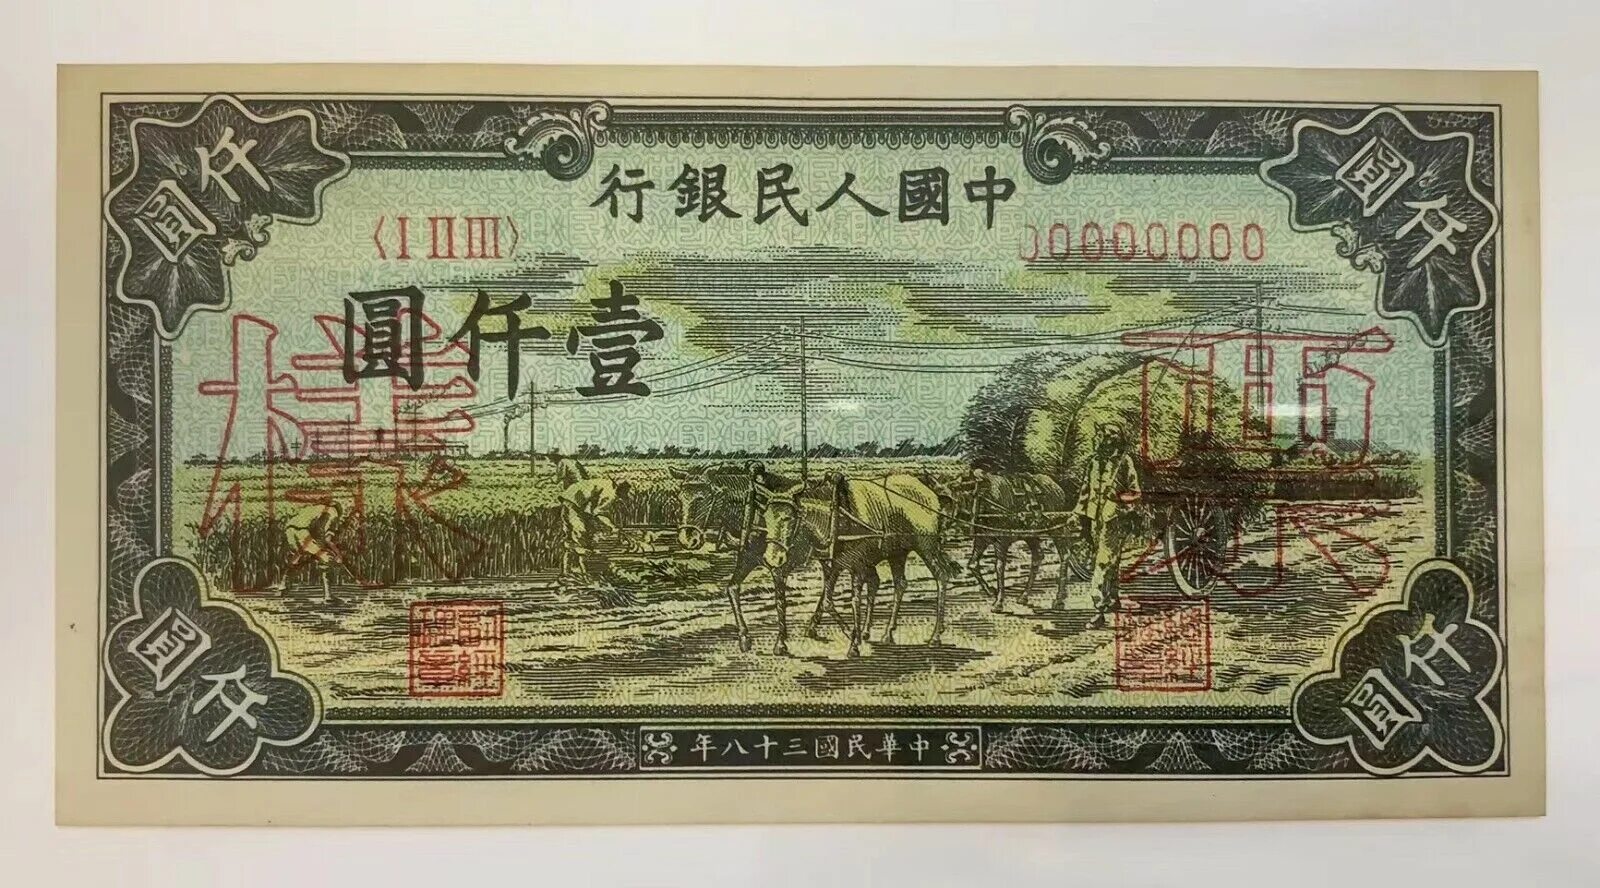 1000 юаней. Юань 1949. Боны Китая 1949 года. Китайские бумажные деньги. Старые китайские банкноты.